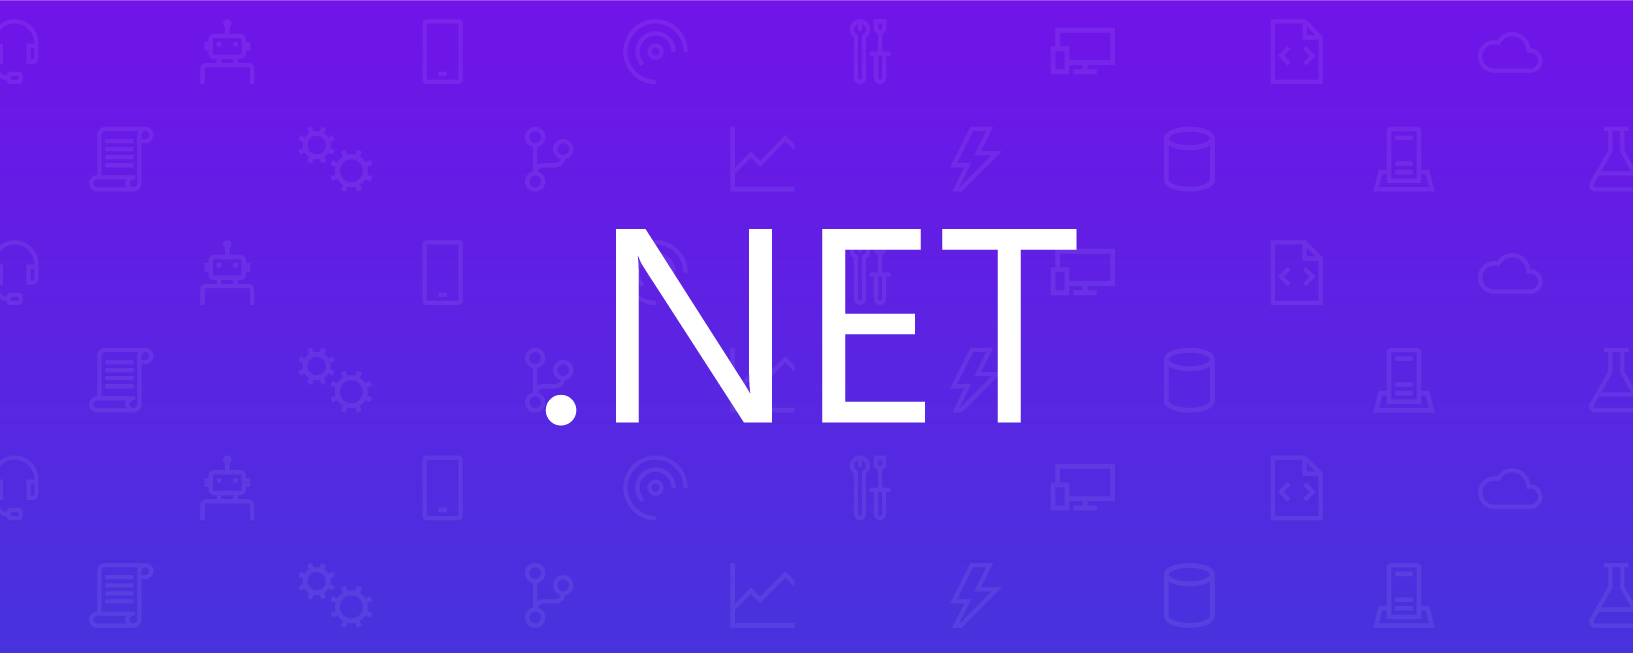 .NET Interactive уже здесь! | .NET Notebooks Preview 2 - 1